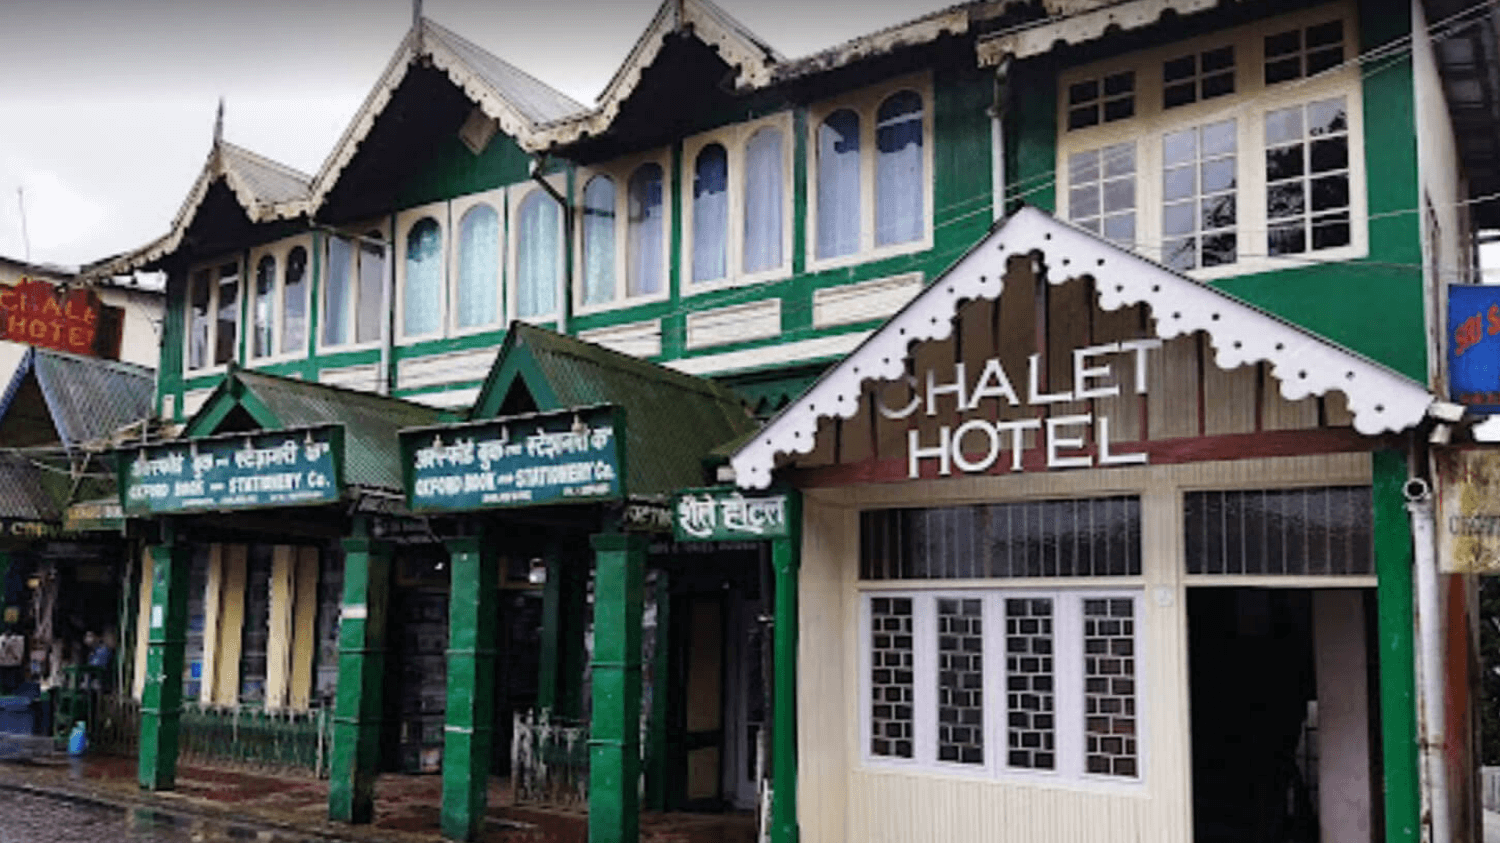 Chalet Hotel, Darjeeling, West Bengal, India